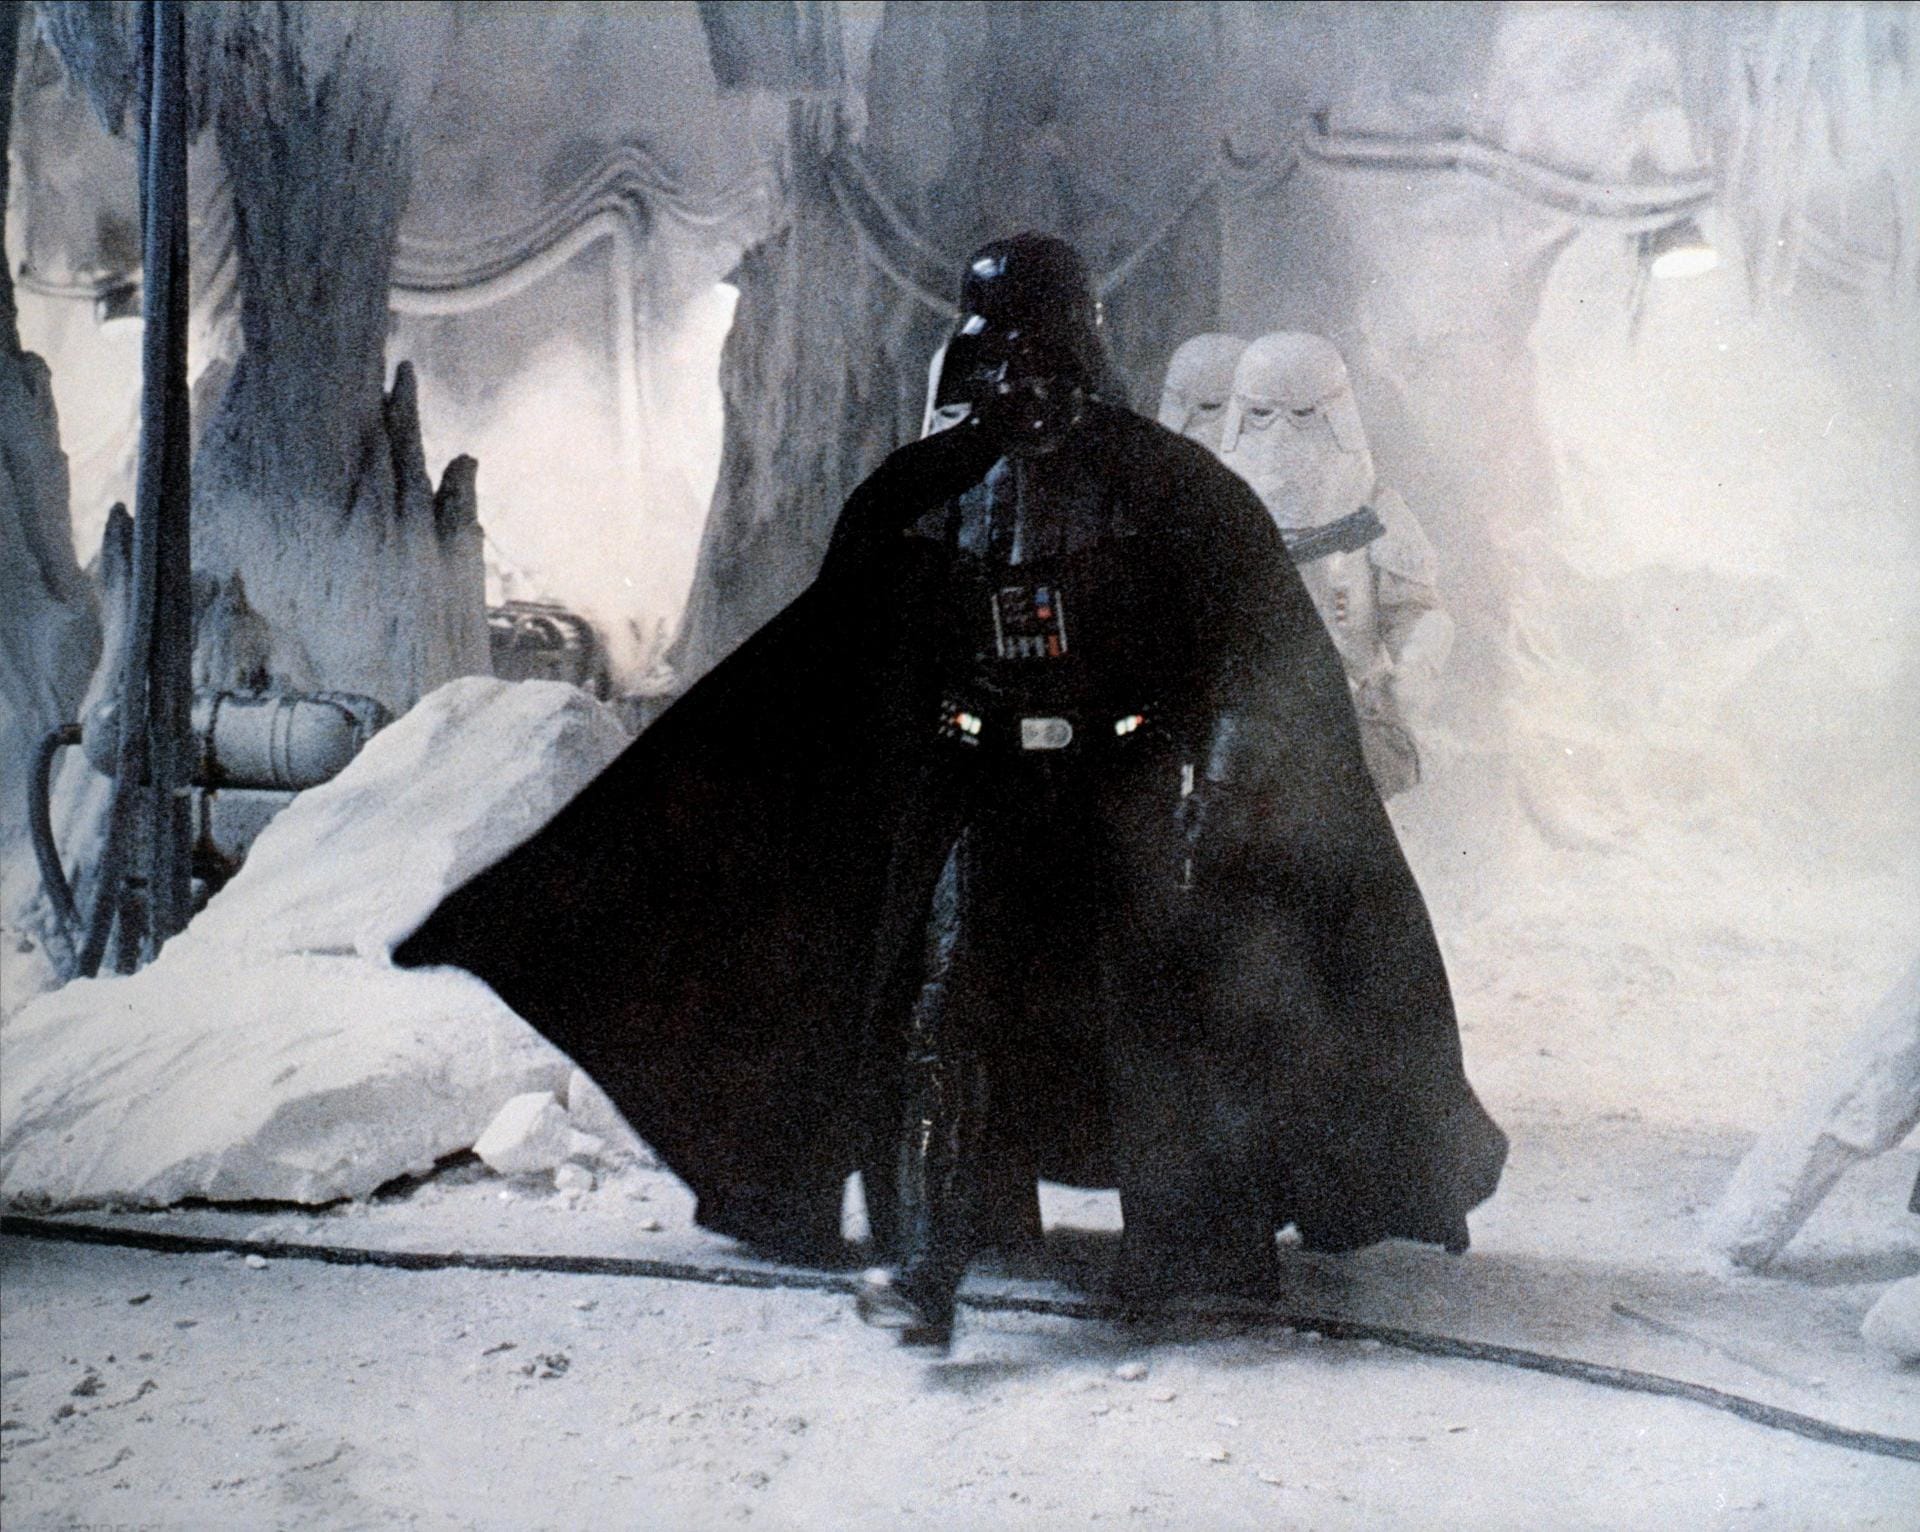 Platz 9: "Ich bin dein Vater". Auch wer noch nie einen "Star Wars"-Film gesehen hat, weiß, wer Darth Vader ist. Der Ruhm des fiesen Sith-Lords überragt sogar den seines eigenen Franchise noch einmal deutlich. An Han Solo kam aber nicht mal Vadder vorbei.